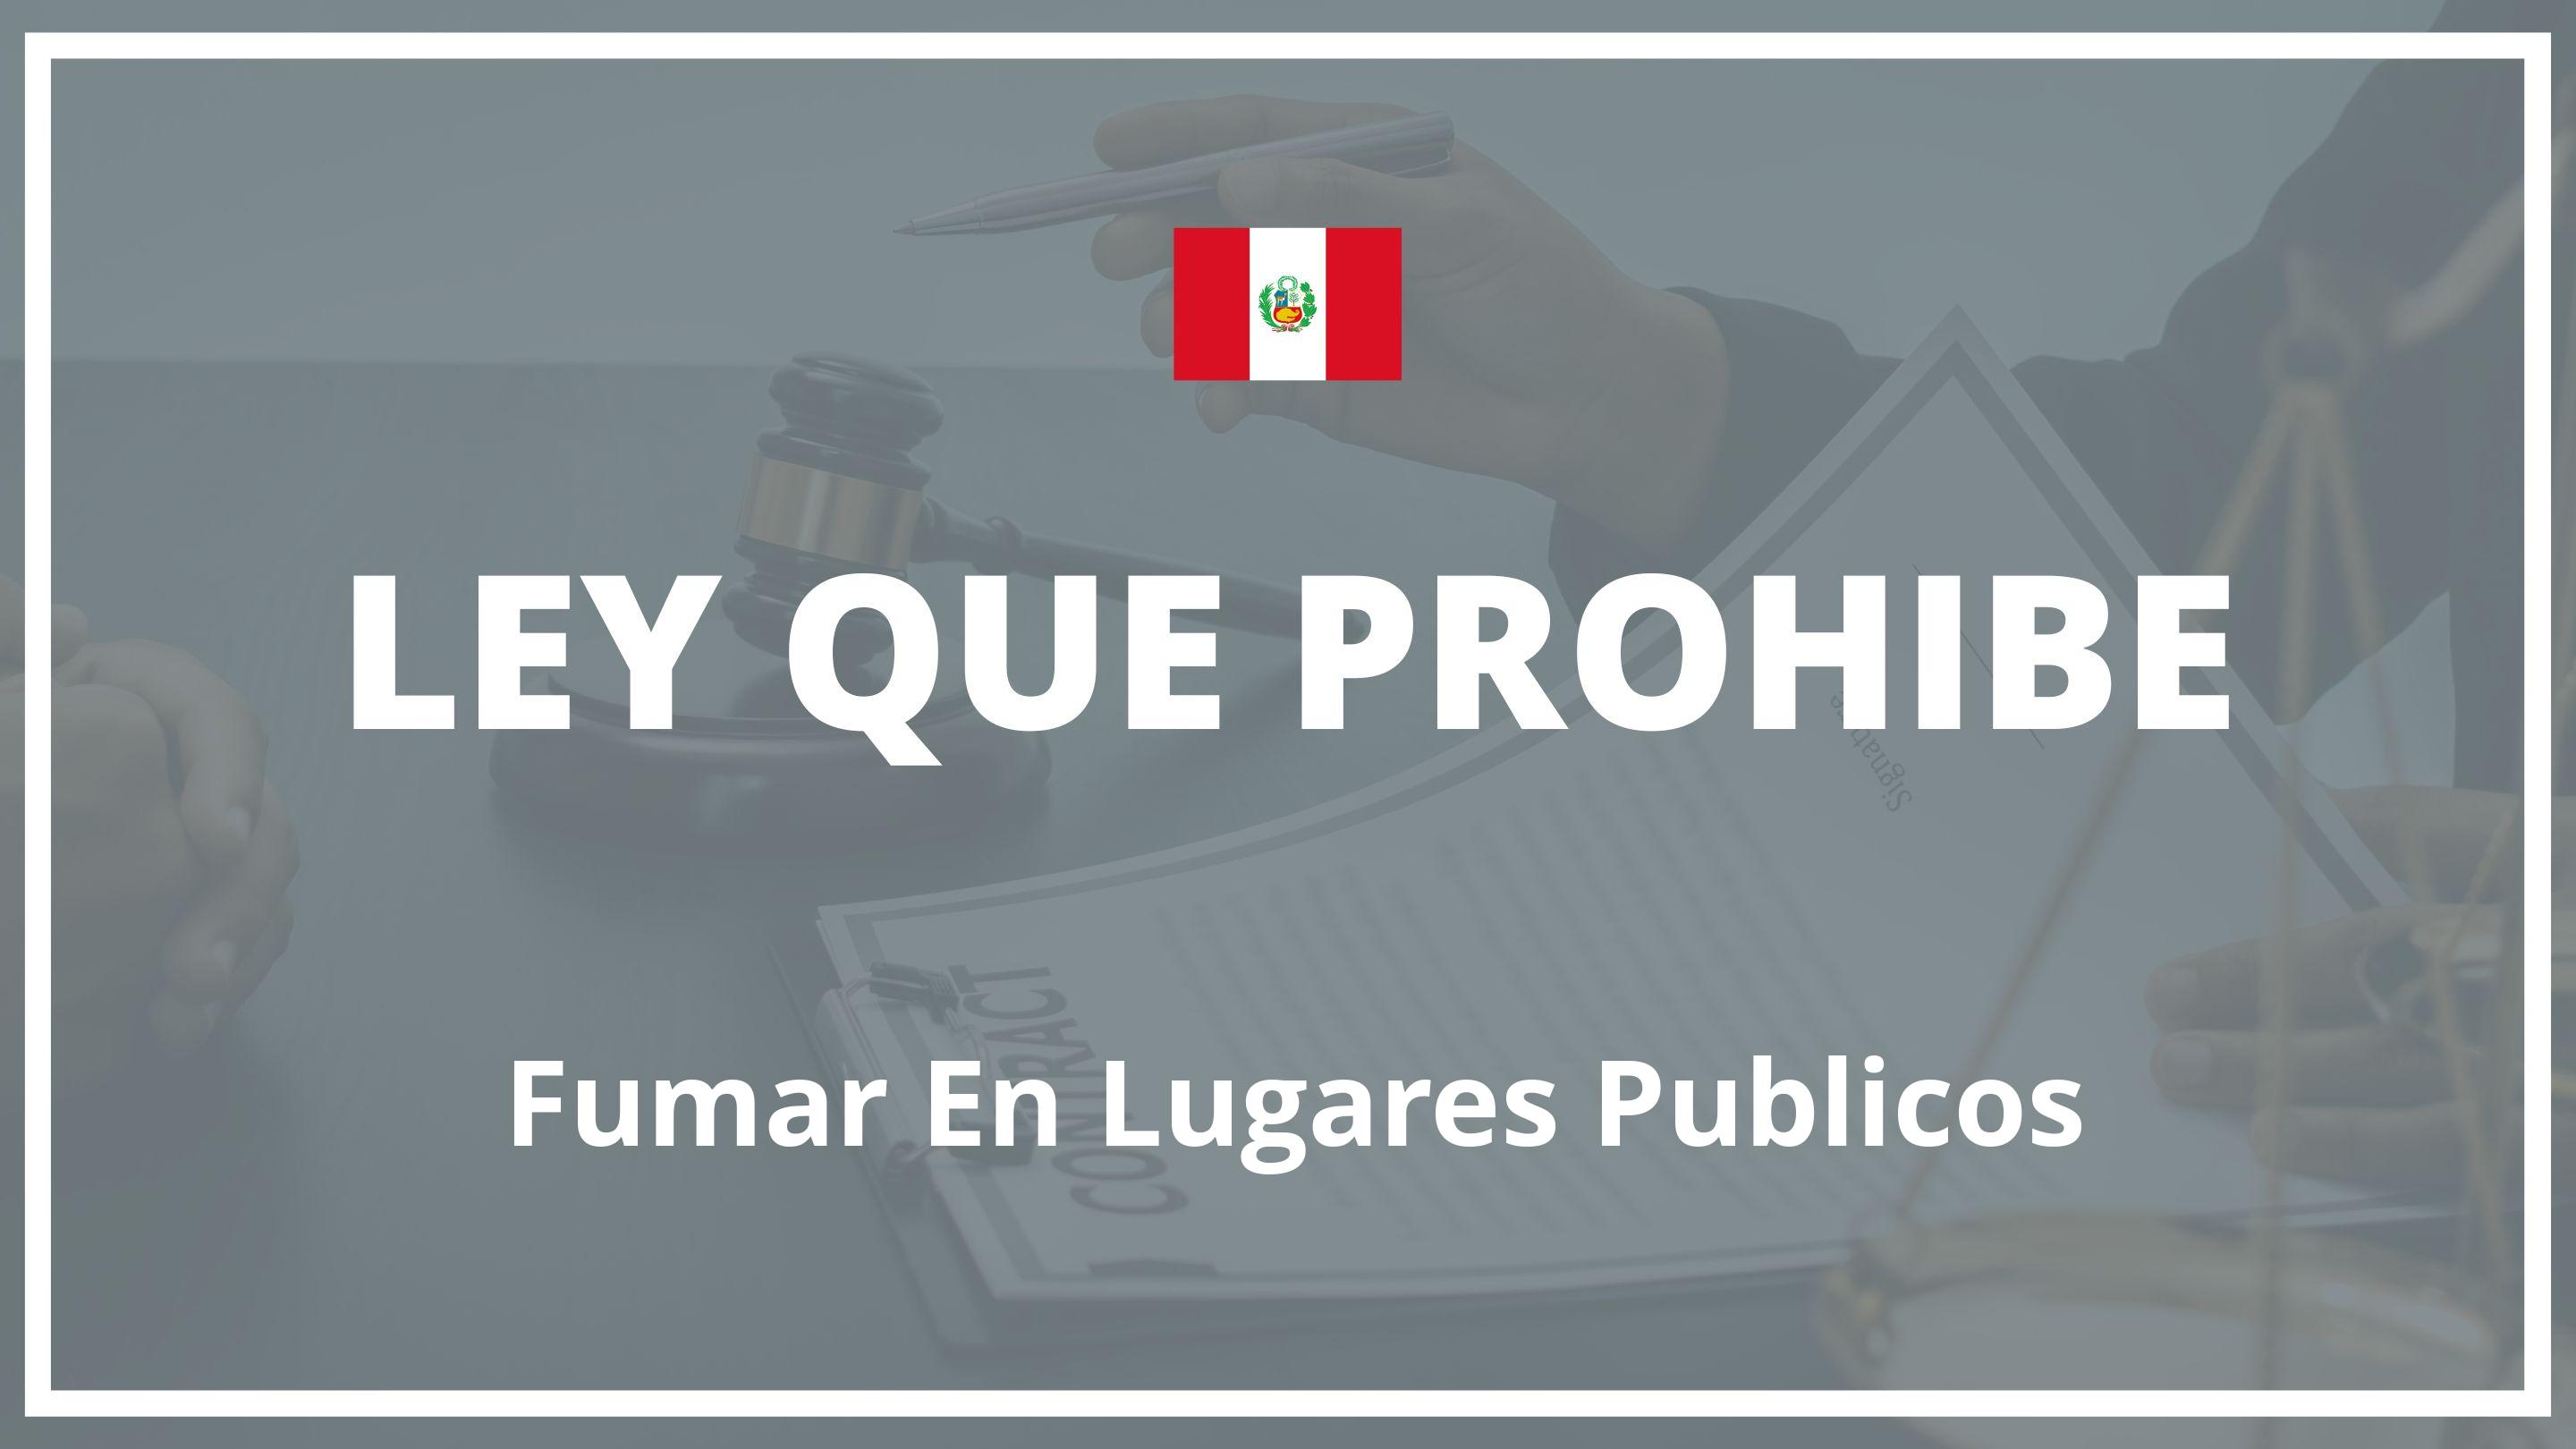 Ley que prohibe fumar en lugares publicos Peru